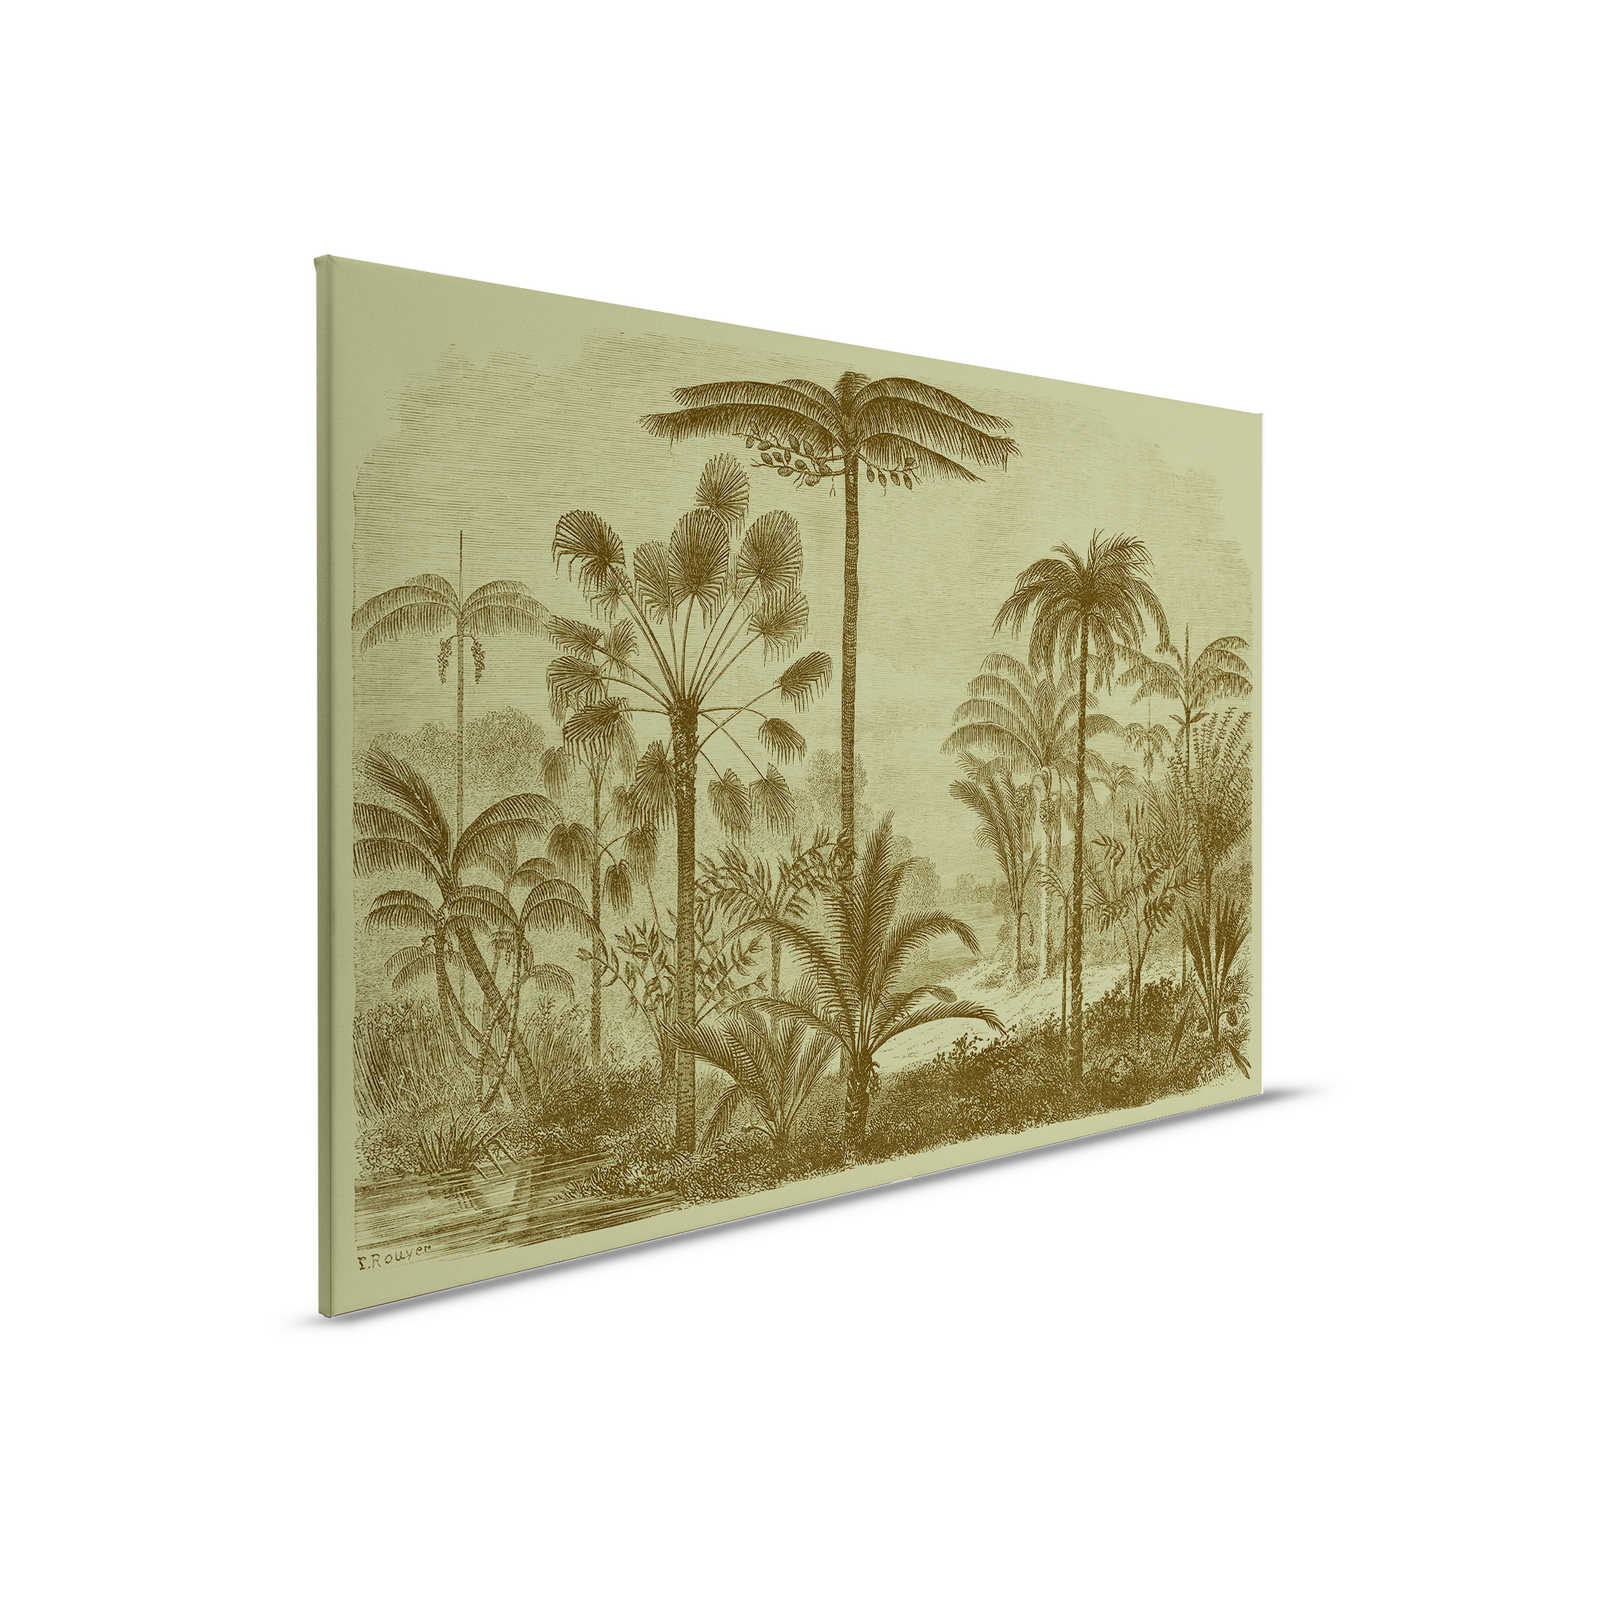 Jurassic 1 - Toile motif jungle gravure sur cuivre - 0,90 m x 0,60 m
